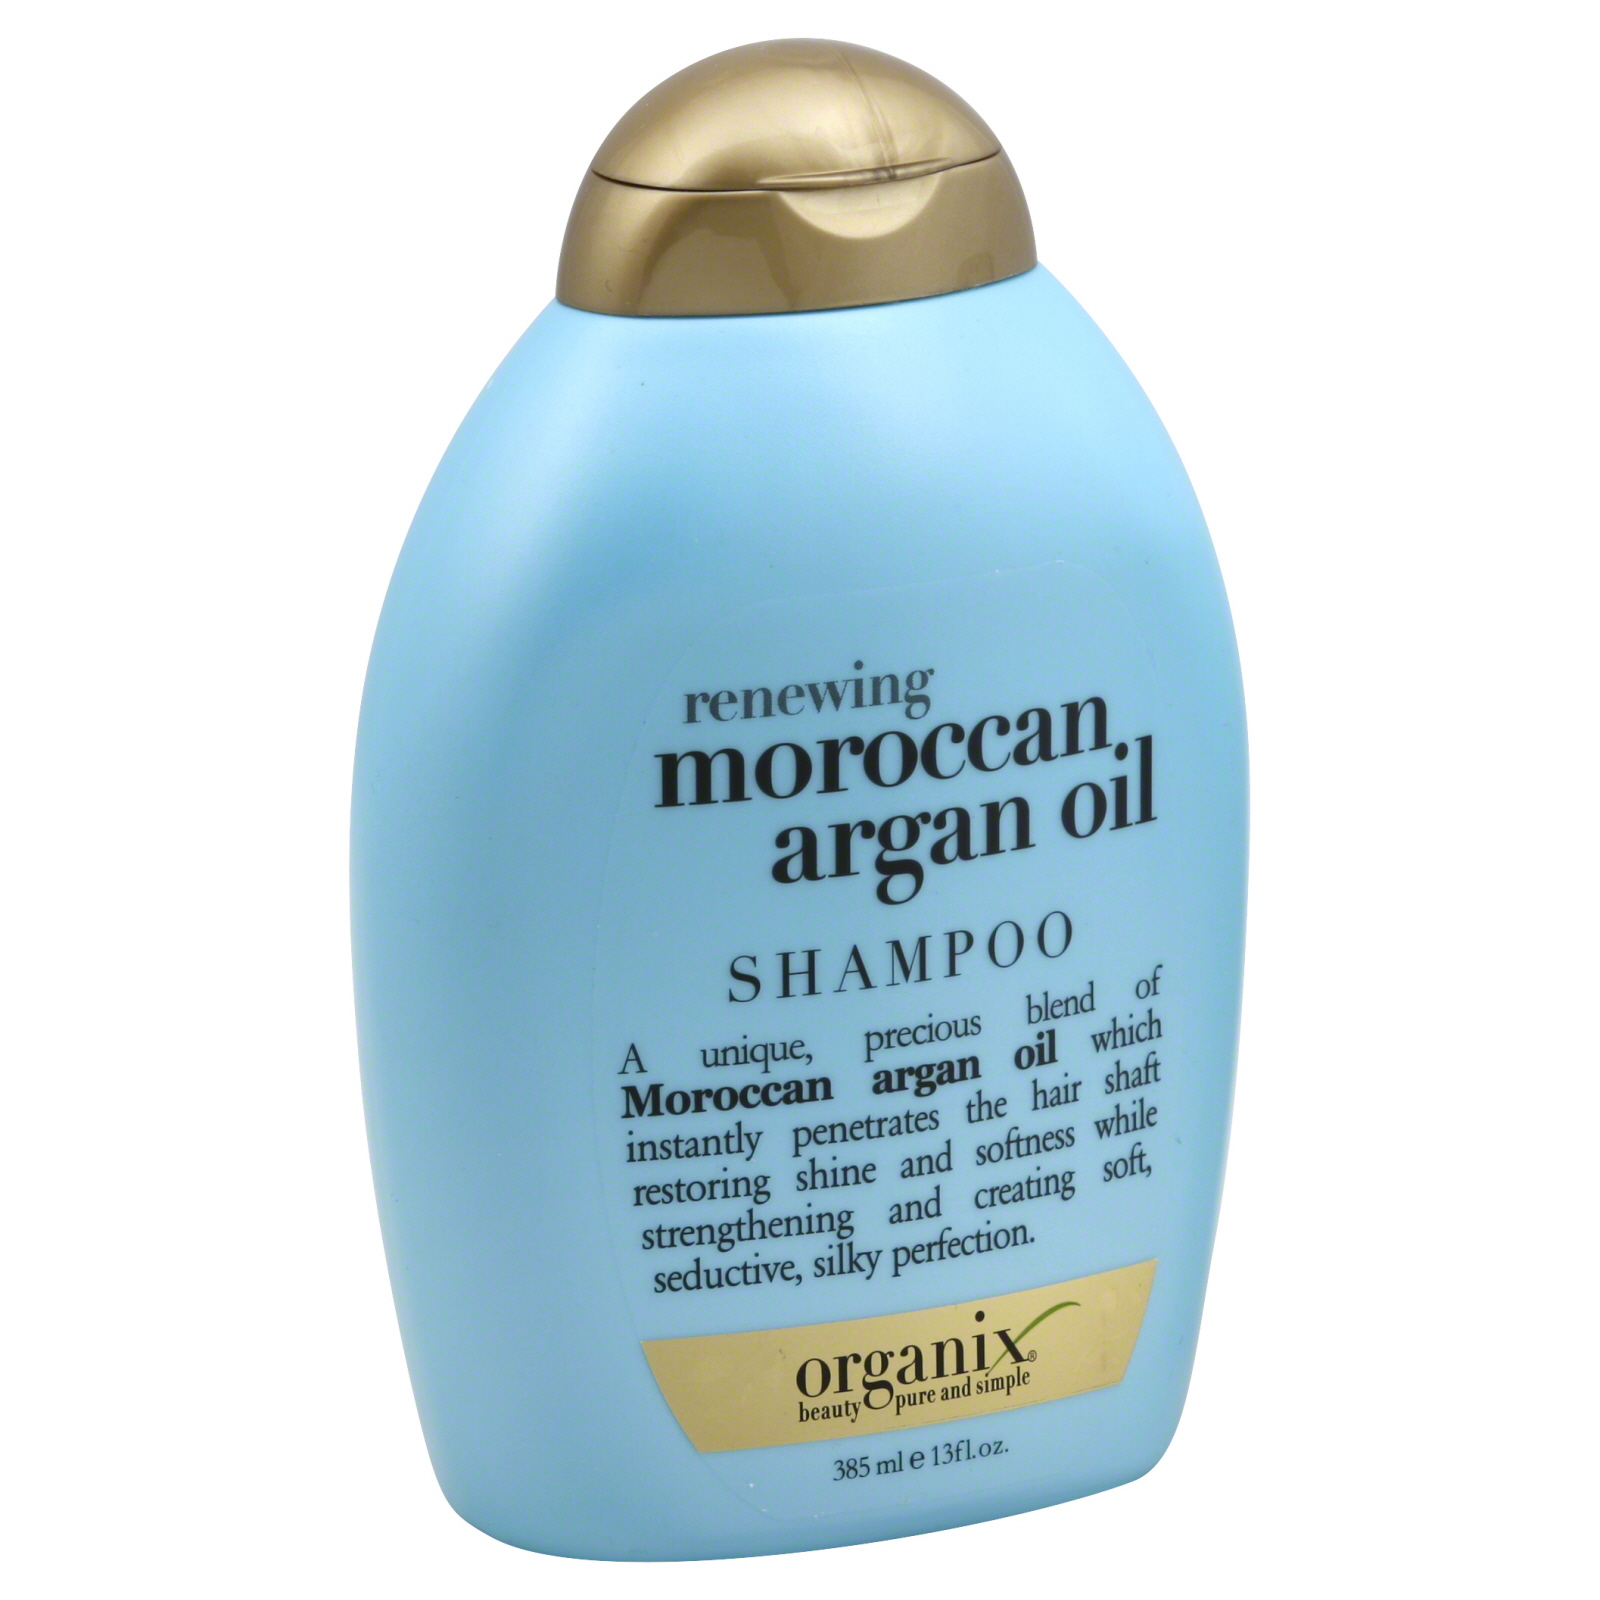 OGX Moroccan Argan Oil Renewing Shampoo, 13 fl oz